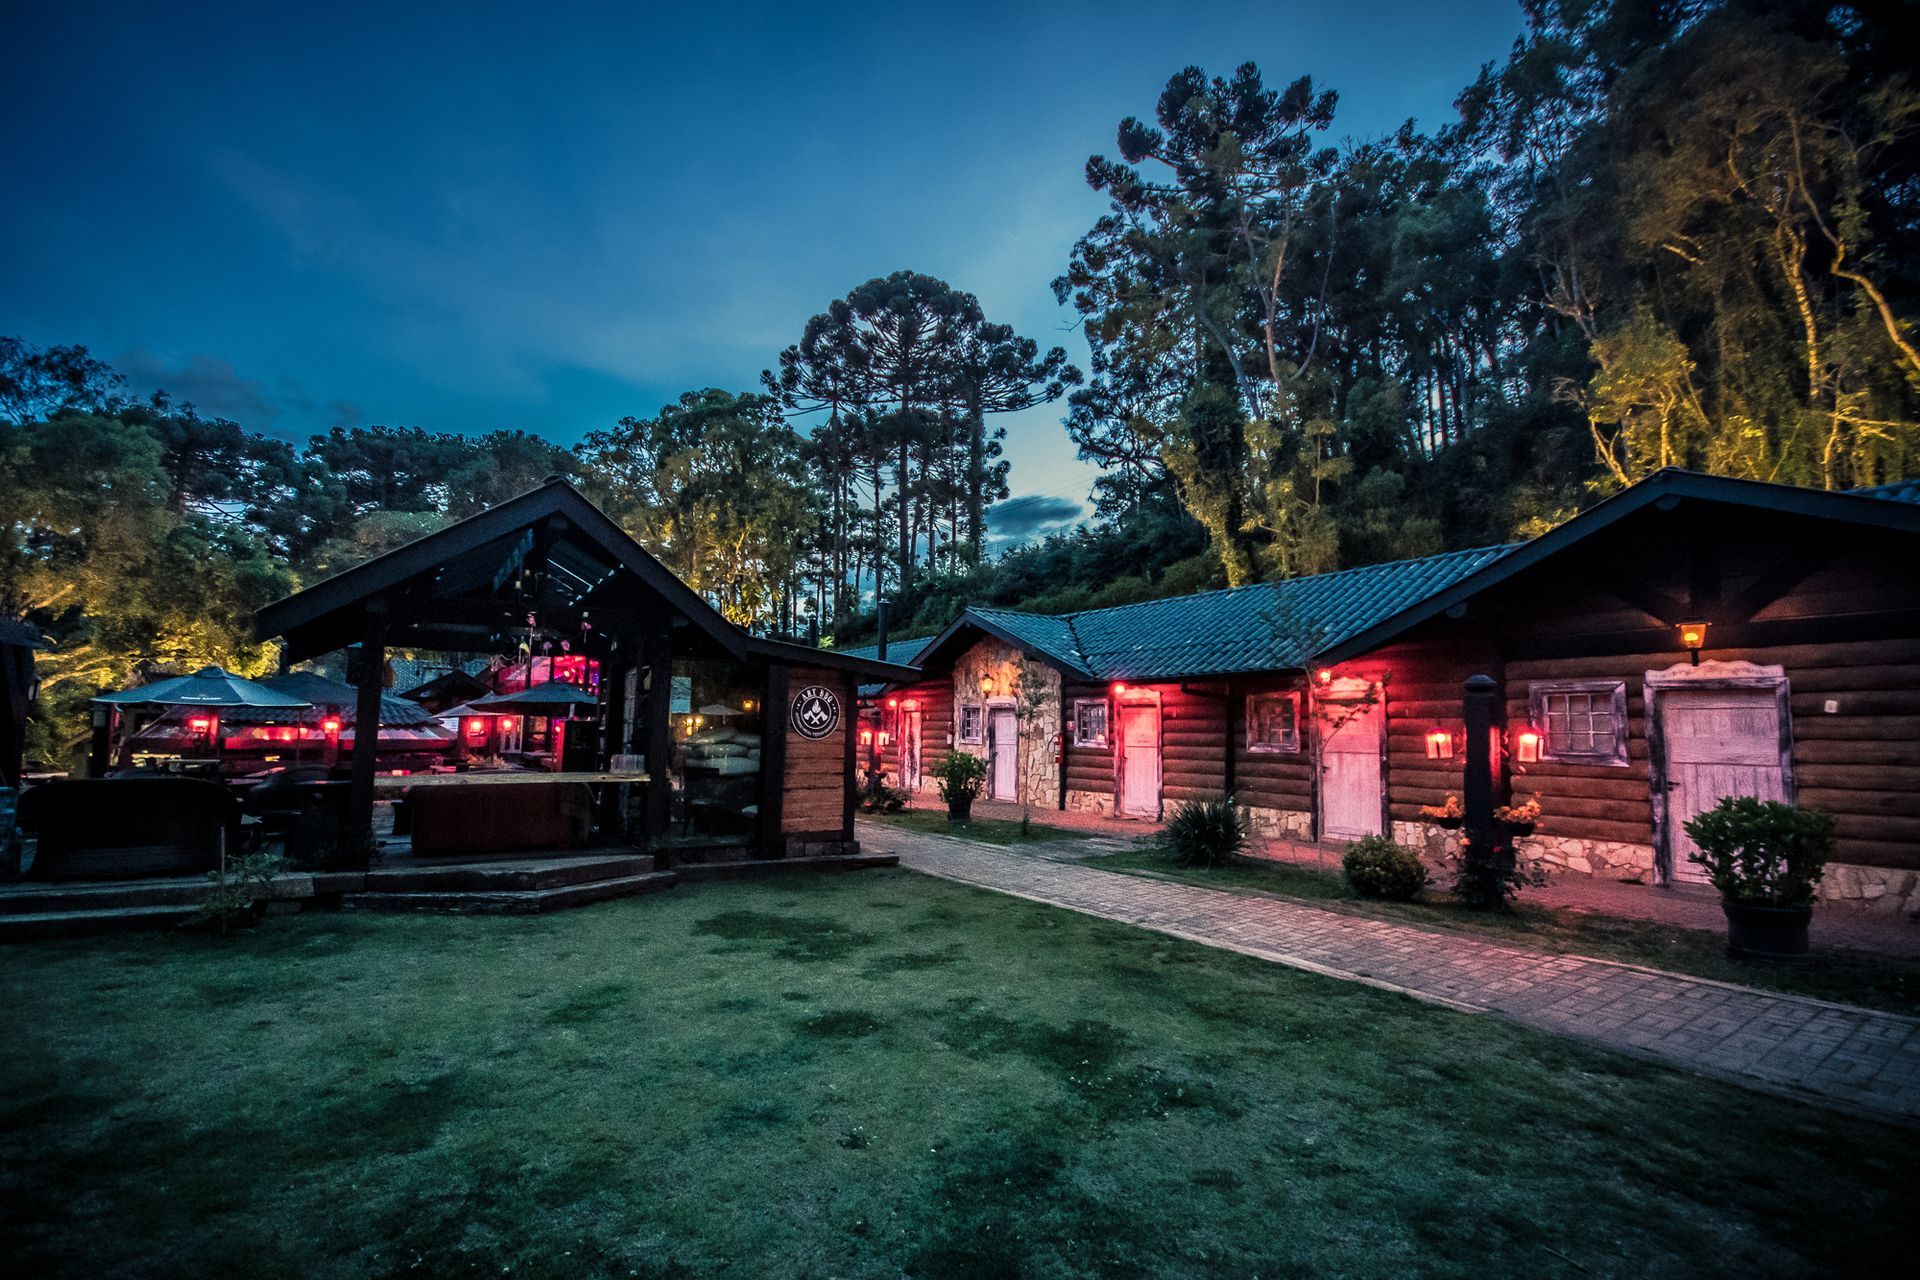 Um grupo de cabanas de madeira fica iluminado à noite.